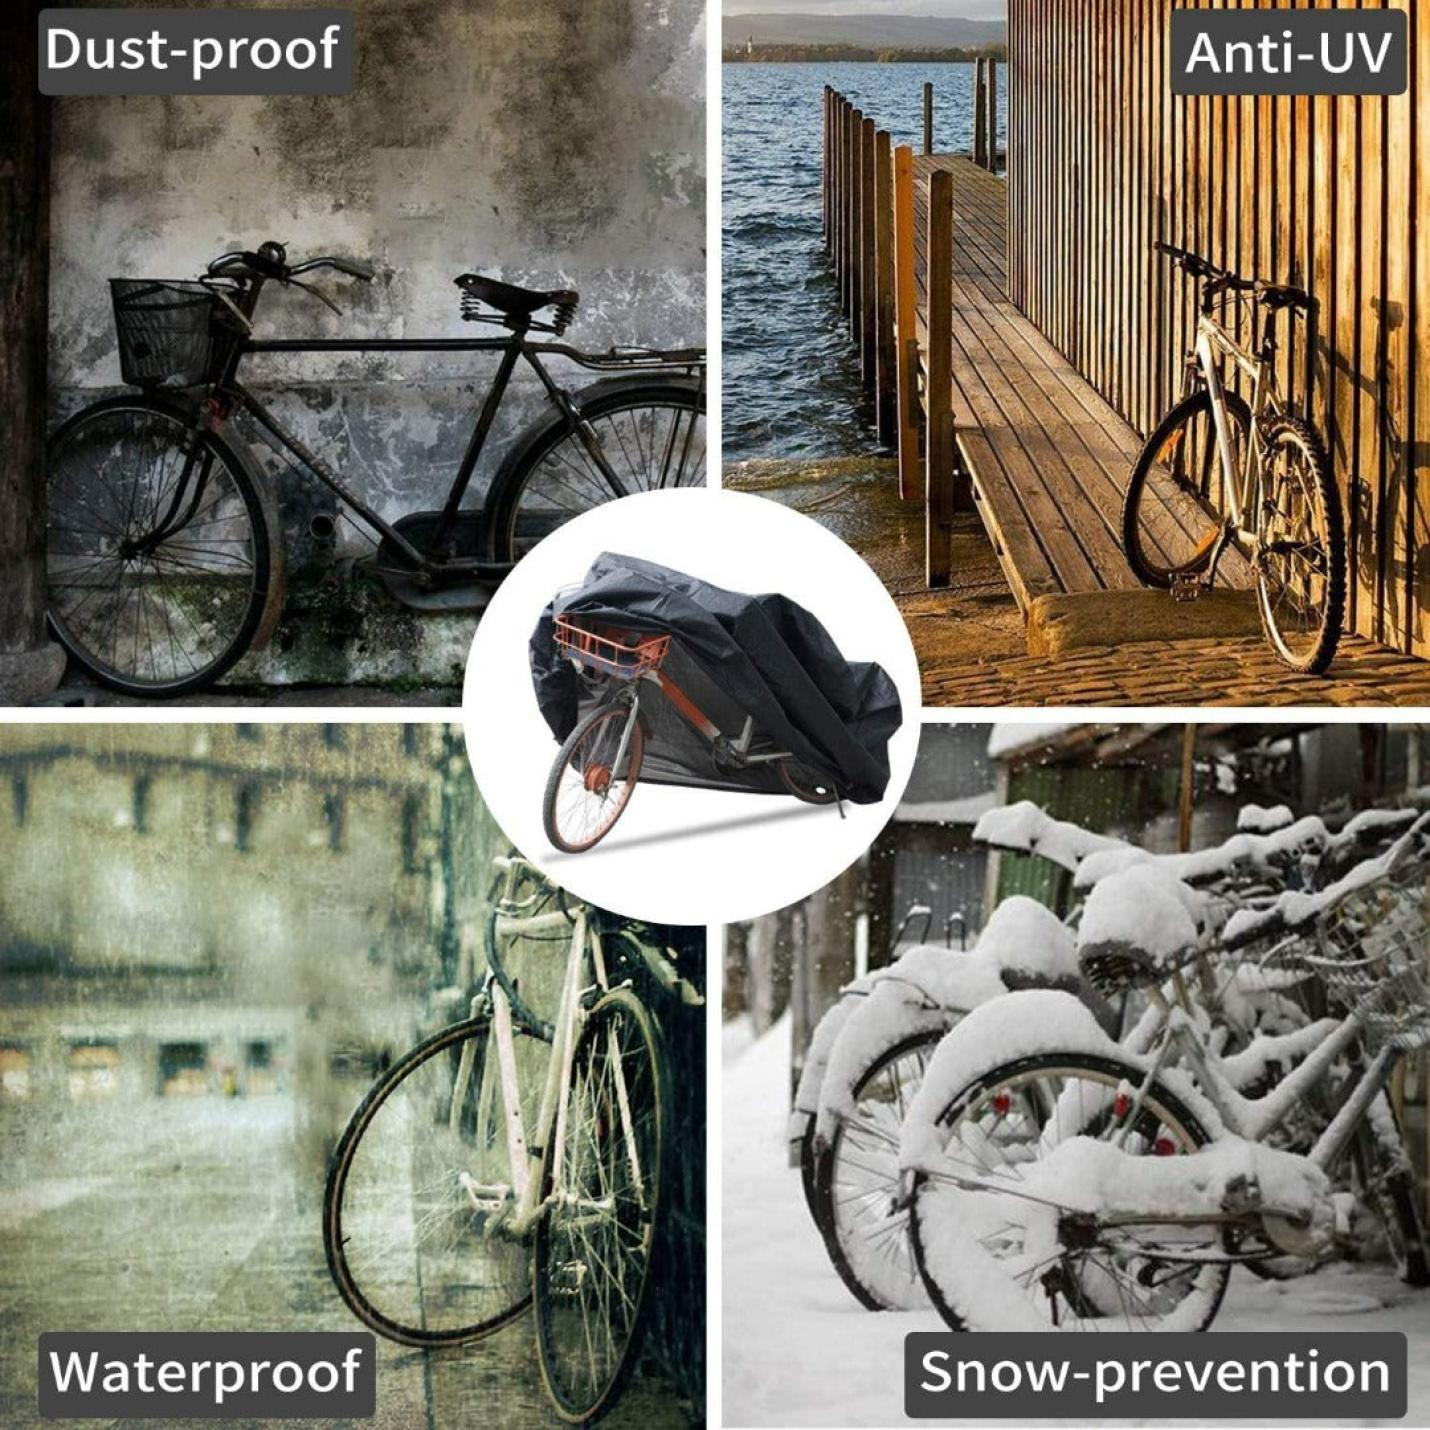 Waterdichte hoes voor fietsen met slotgaten, ideaal voor bescherming tegen weersinvloeden